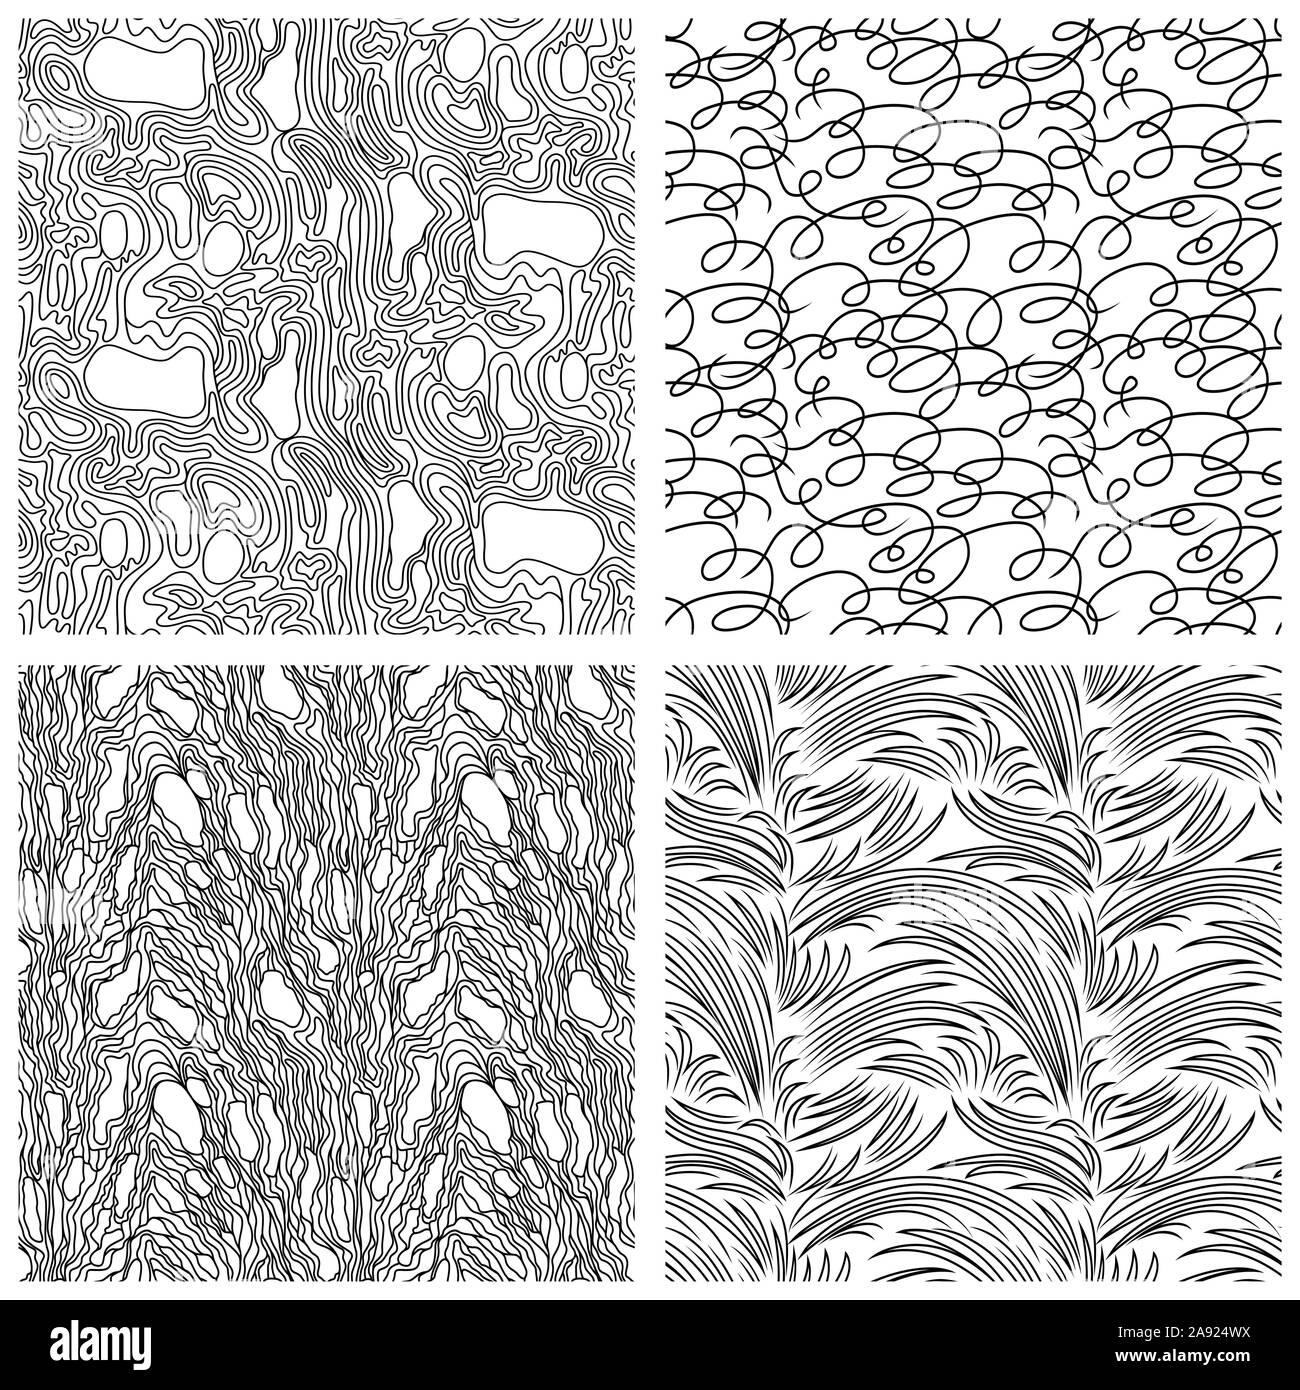 Quattro astratti modelli senza soluzione di continuità con il nero caotico e linee casualmente sullo sfondo bianco, mano disegno illustrativo Illustrazione Vettoriale